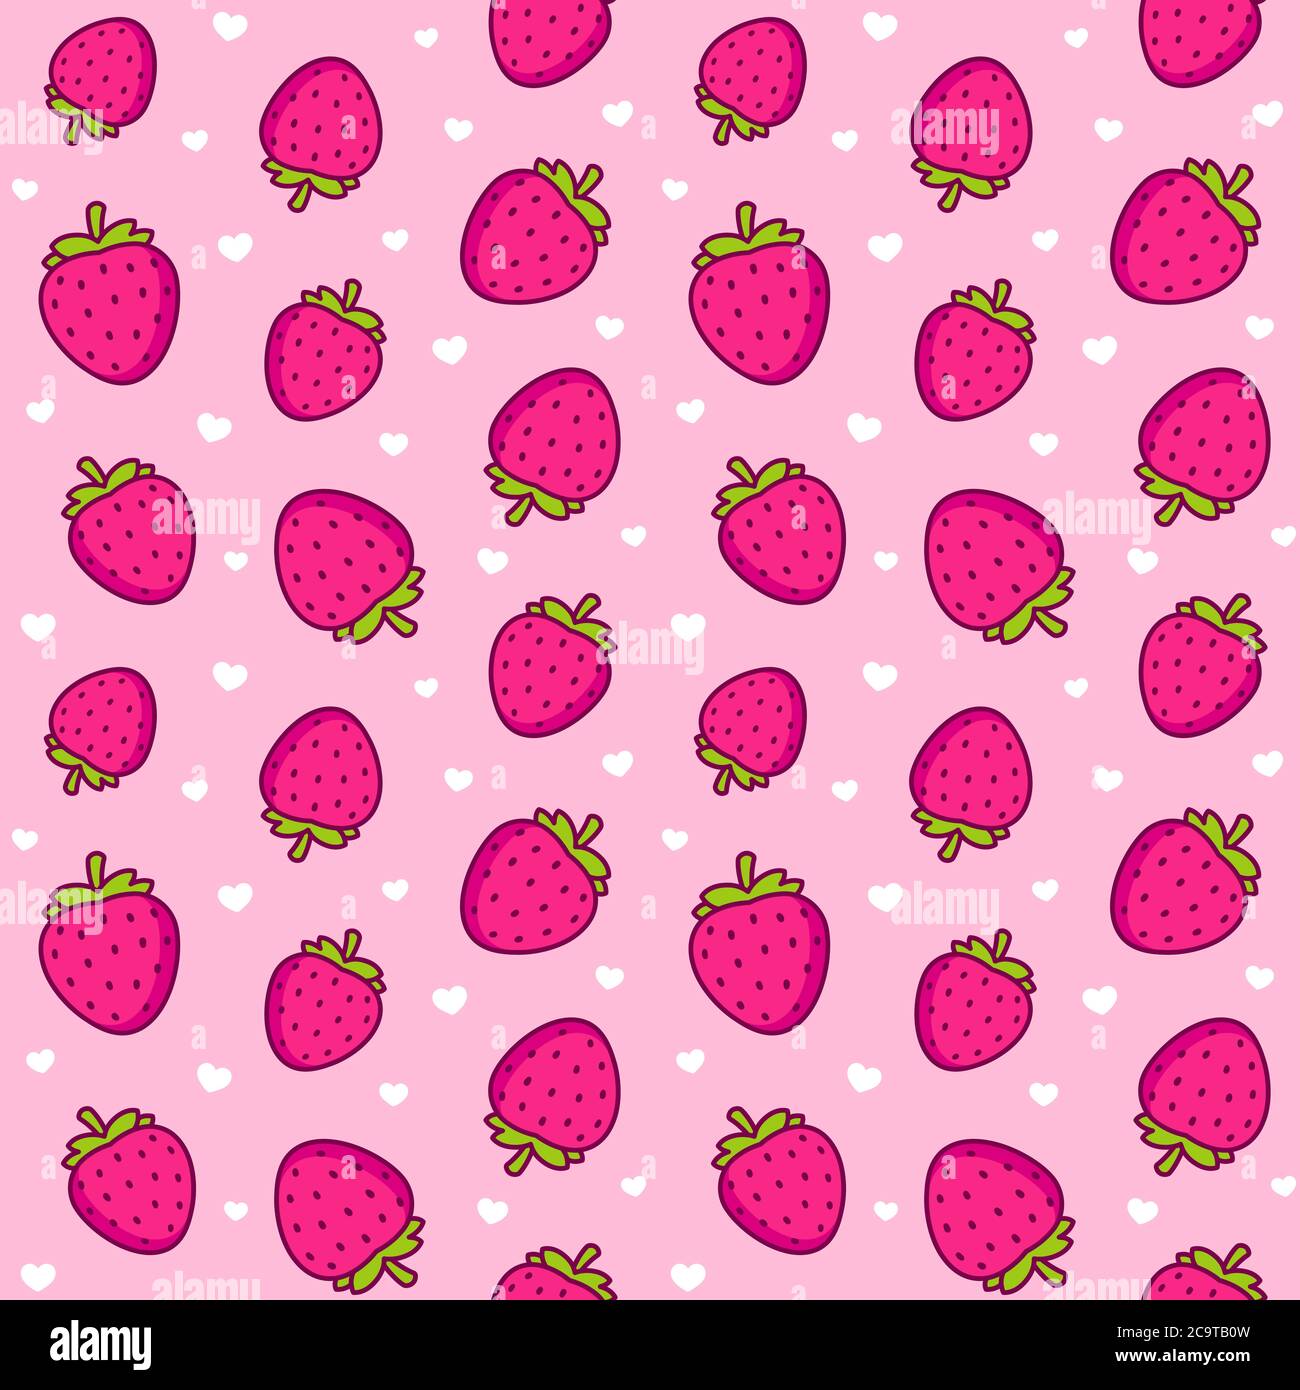 Niedliche Cartoon Erdbeere Muster. Nahtlose Textur von Erdbeeren und kleinen Herzen auf rosa Hintergrund. Vektorgrafik Clip Art Illustration. Stock Vektor